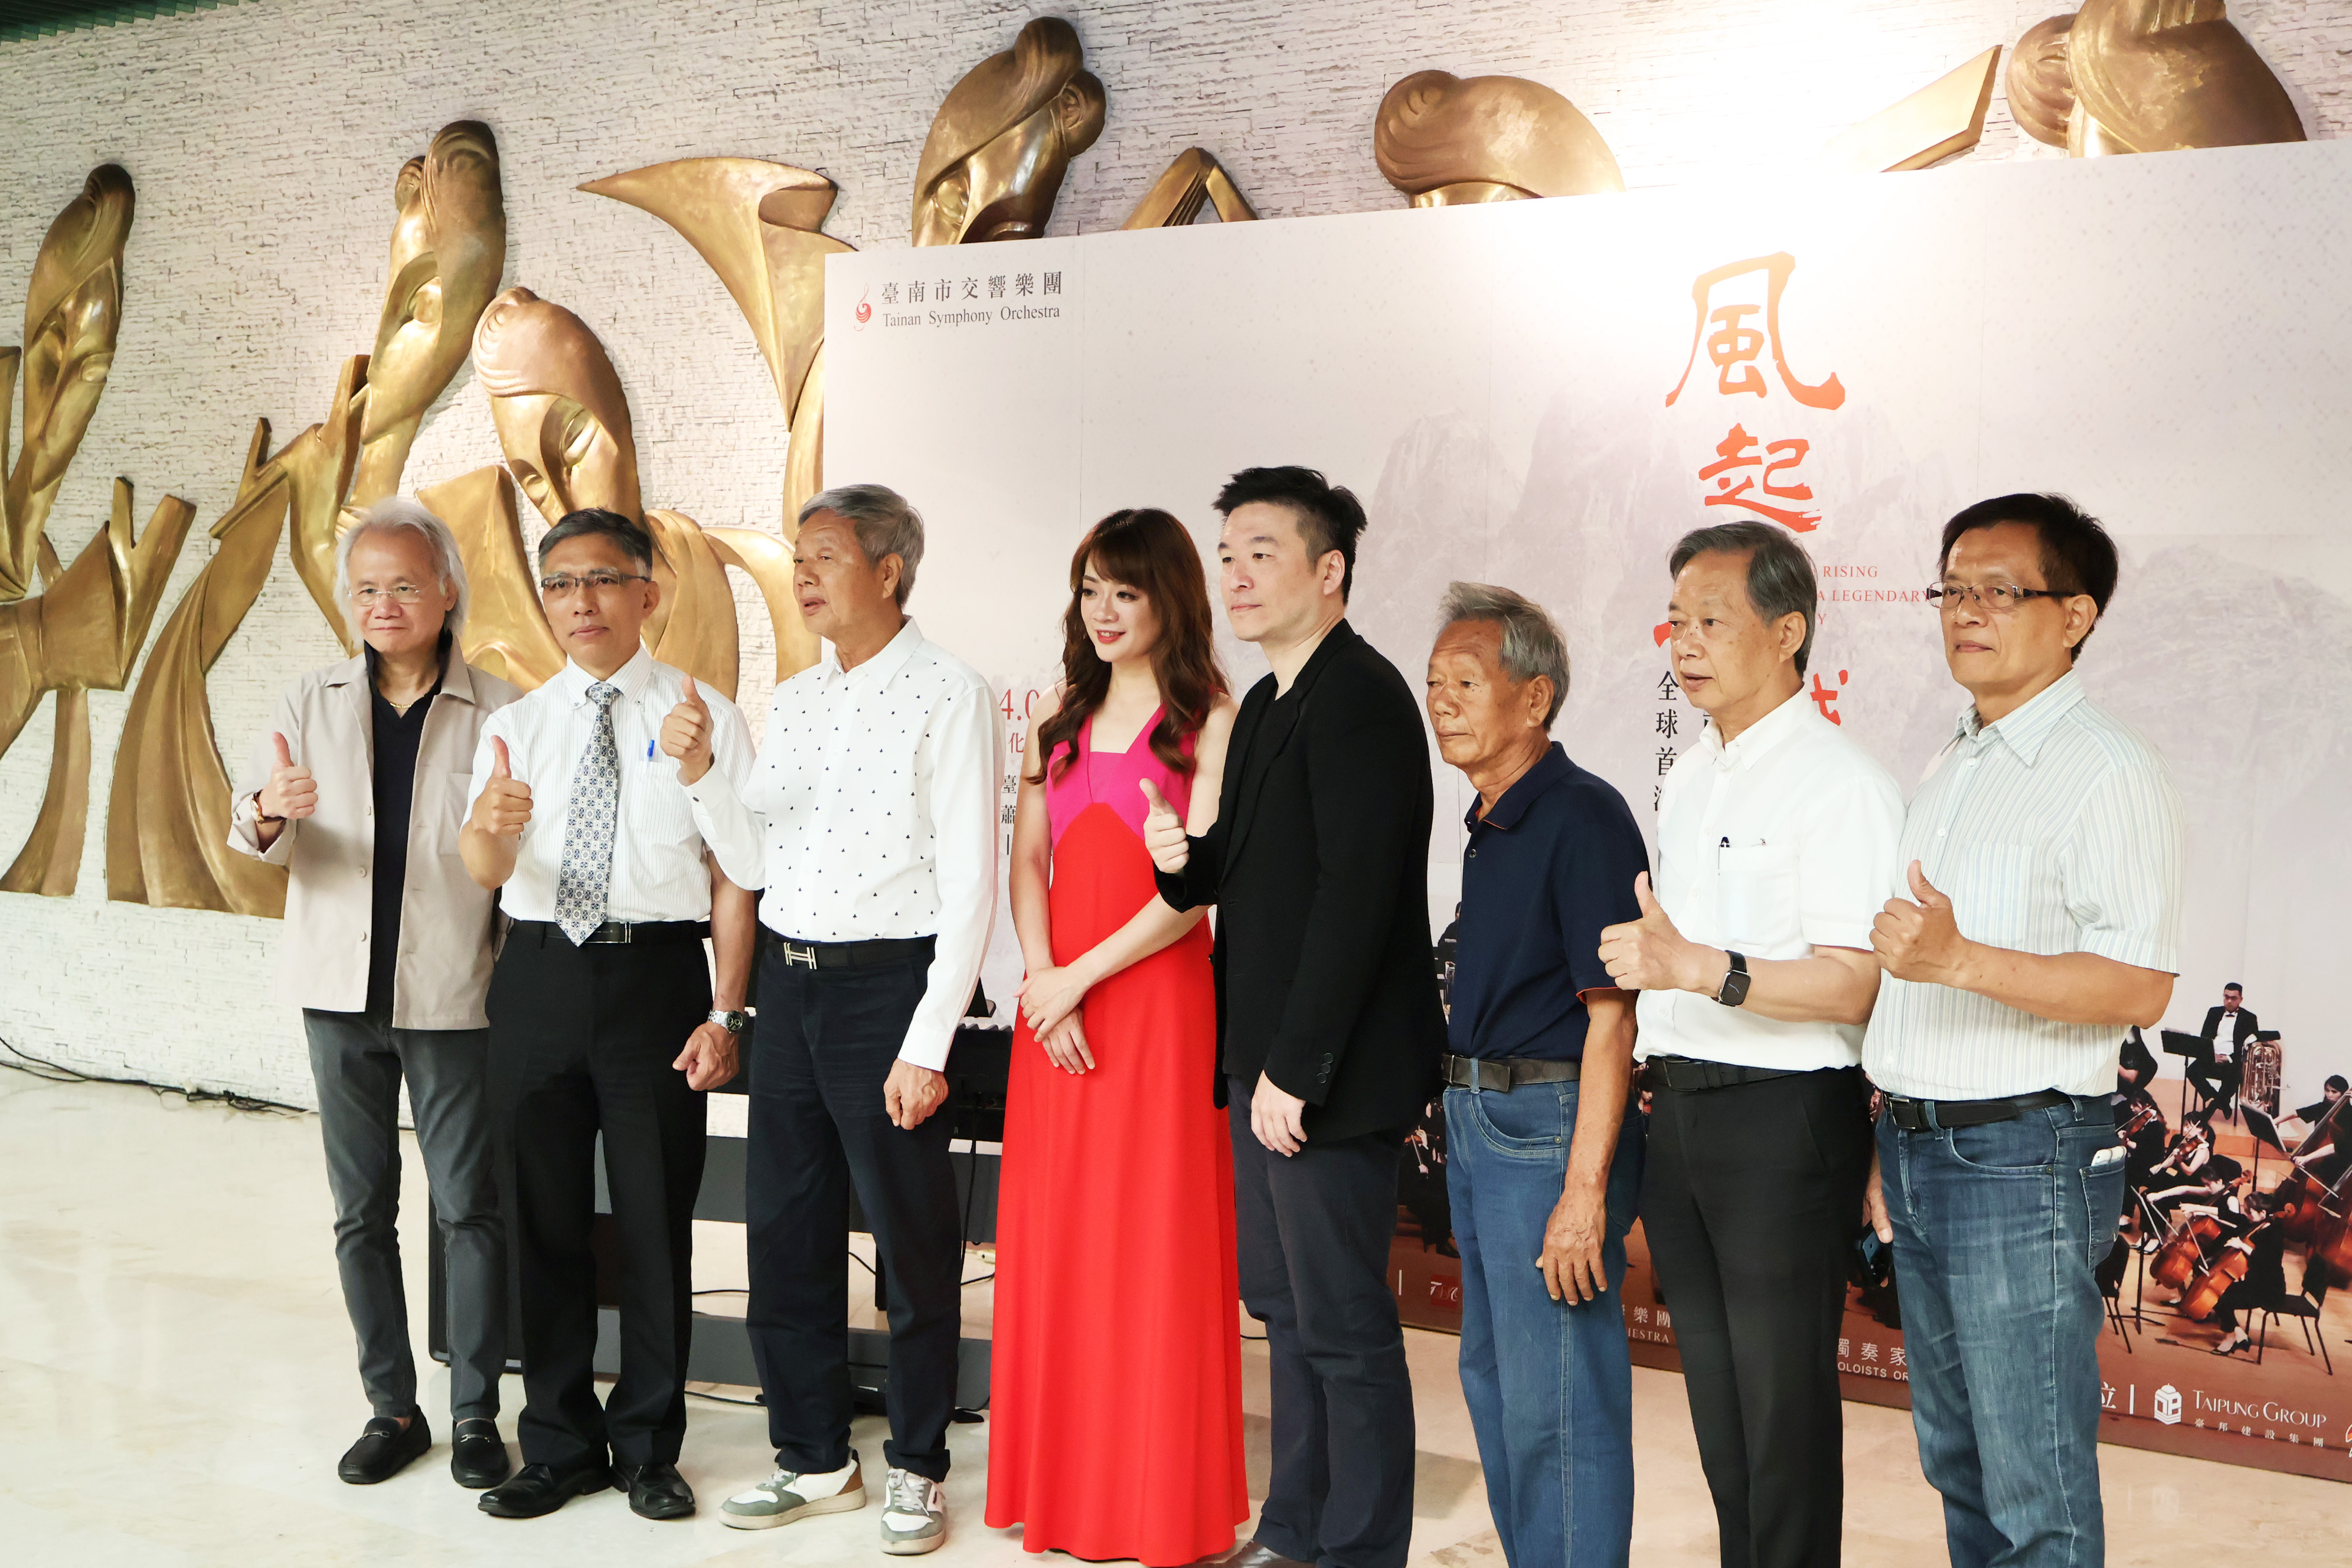 為臺南而做 迎向下個百年世代 風起王城交響四部曲 世界首演